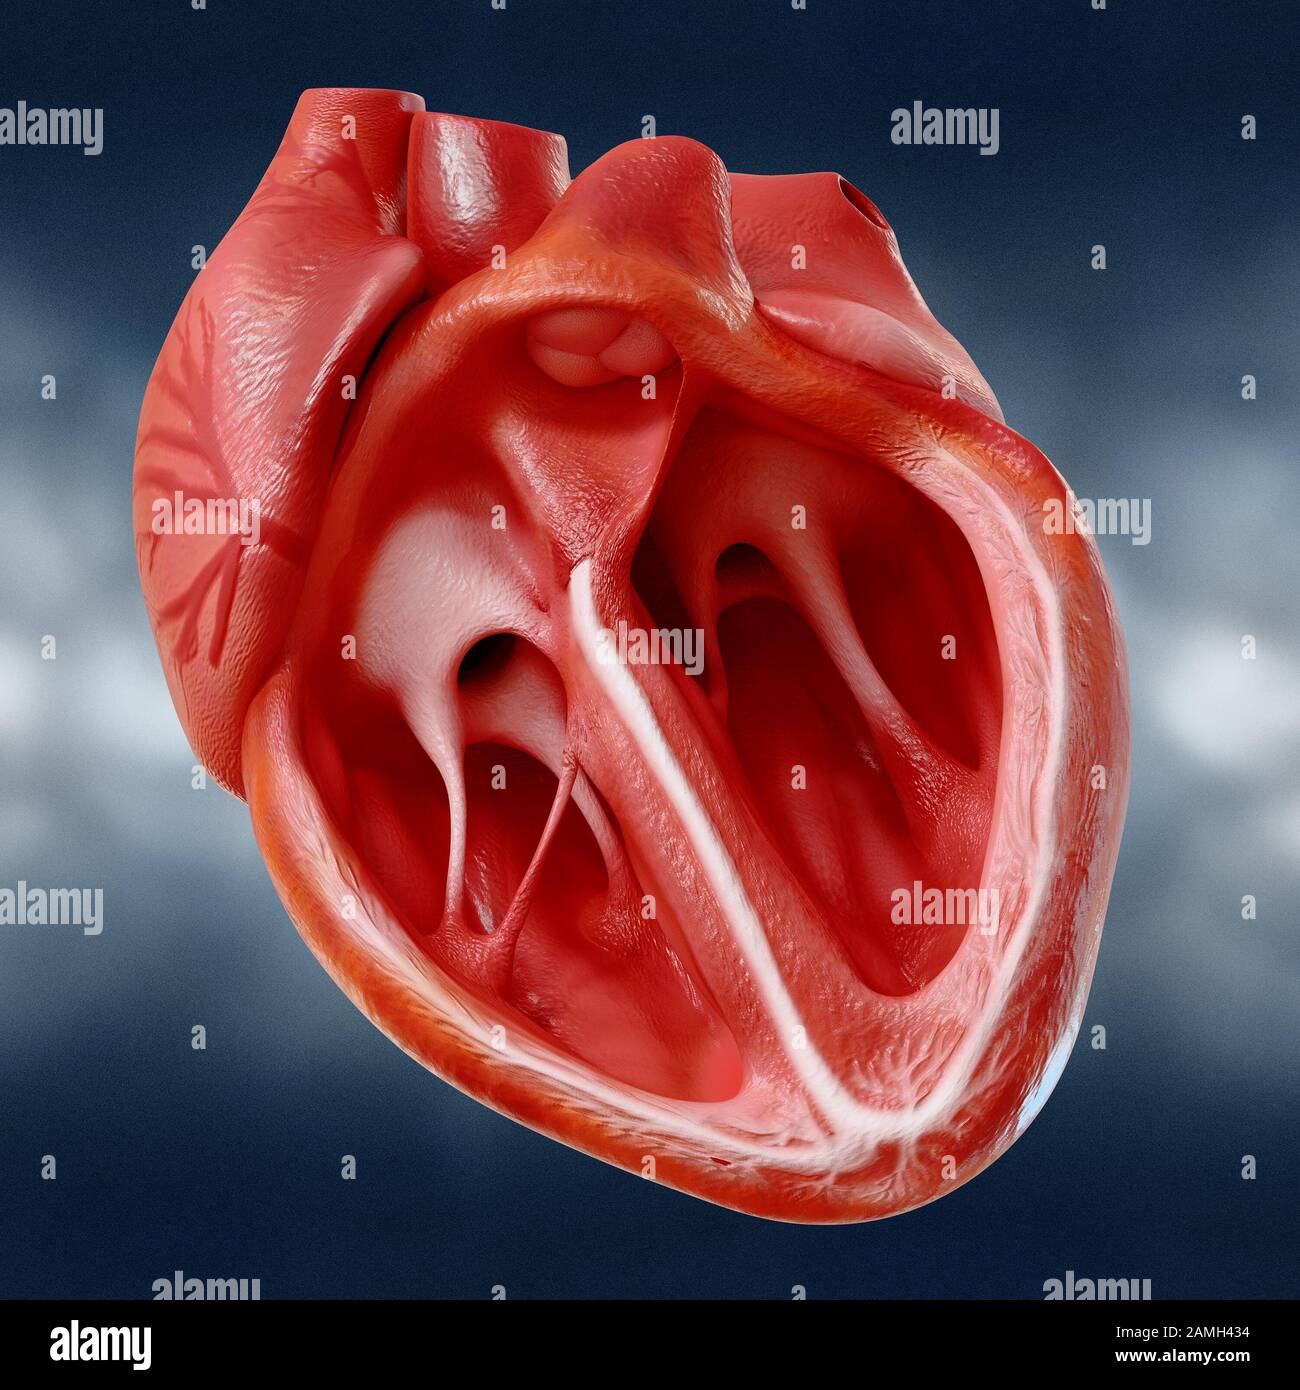 Modèle anatomiquement corrects du cœur humain avec les ventricules et les principaux vaisseaux, 3D Rendering Banque D'Images